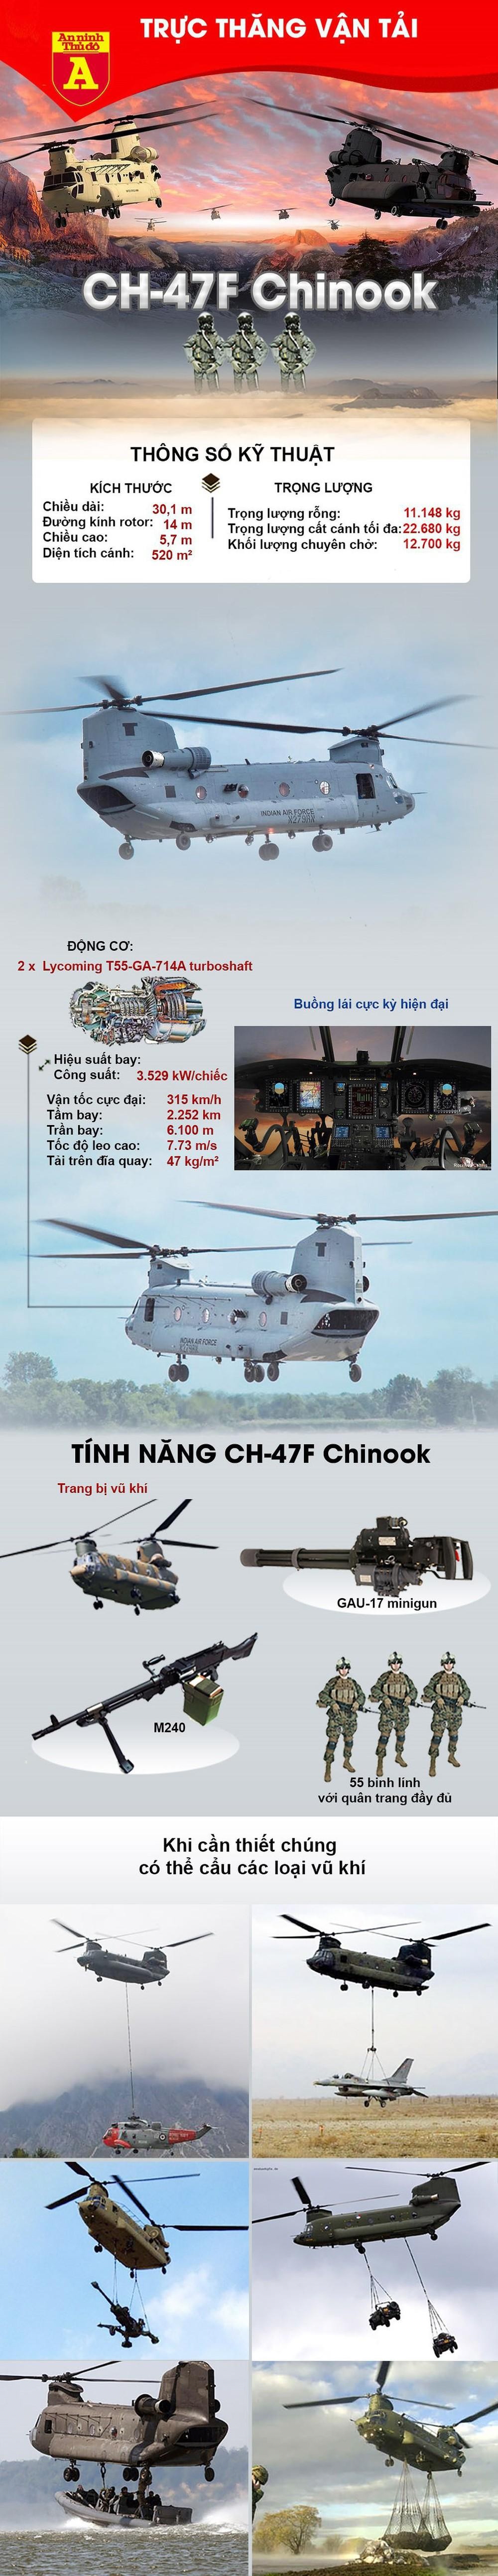 Ấn Độ triển khai siêu trực thăng khổng lồ tới biên giới Trung Quốc ảnh 3